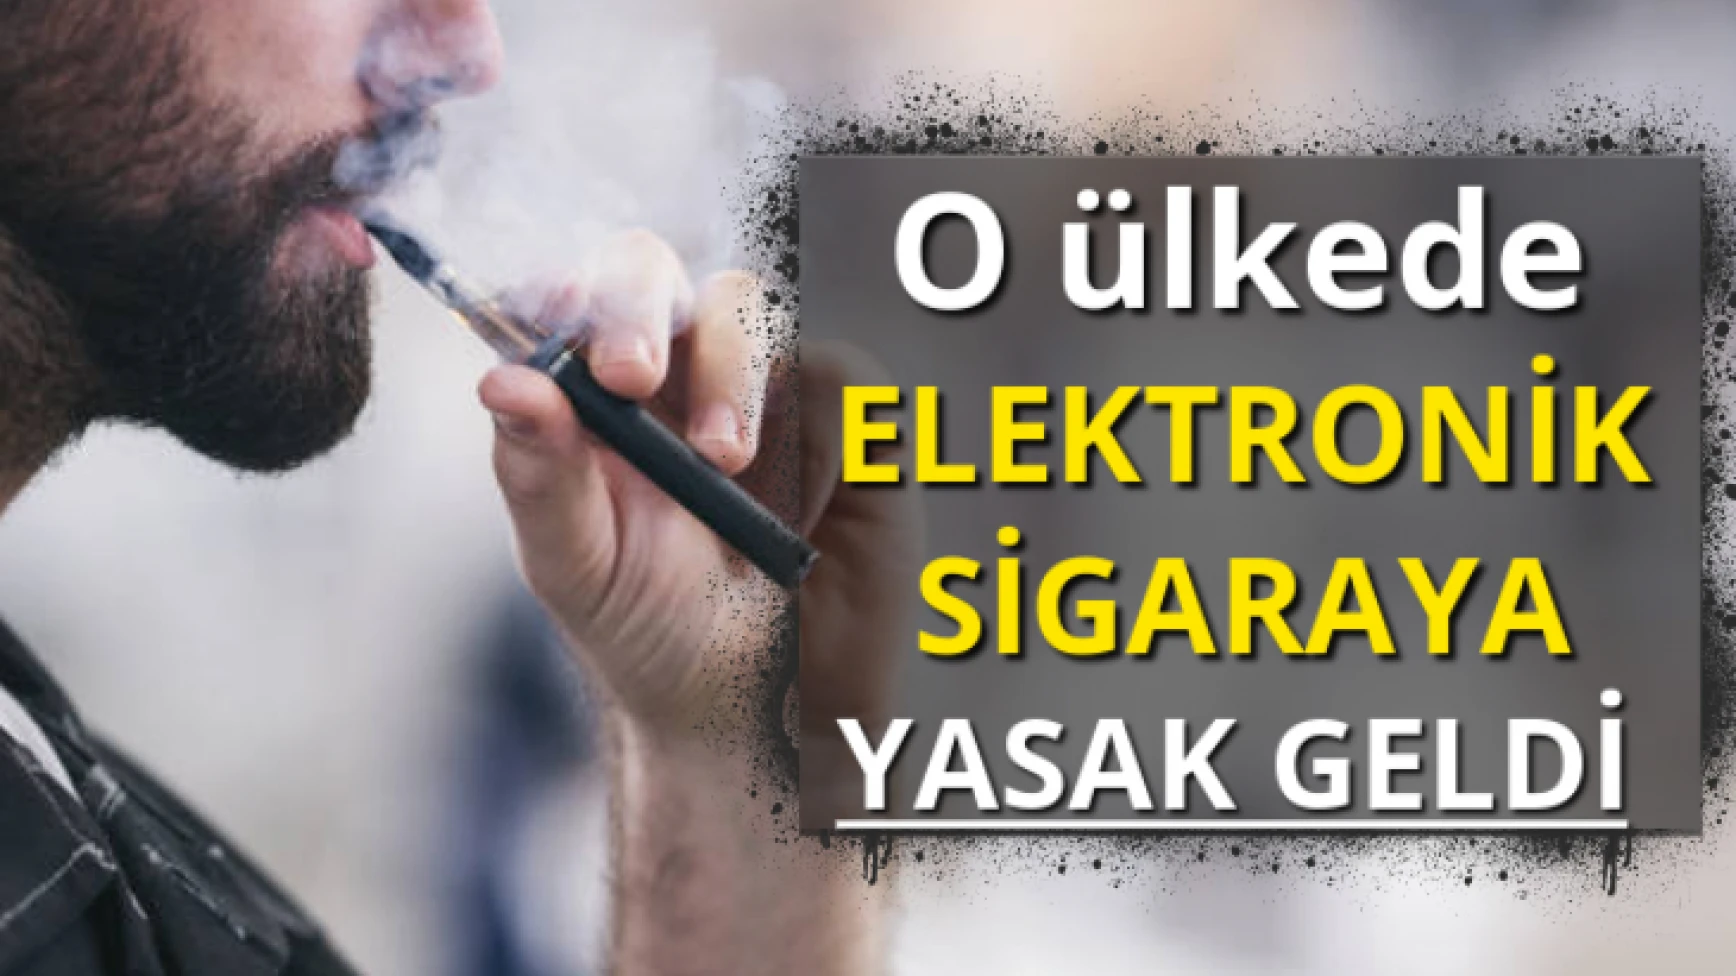 O ülkede elektronik sigaraya yasak geldi